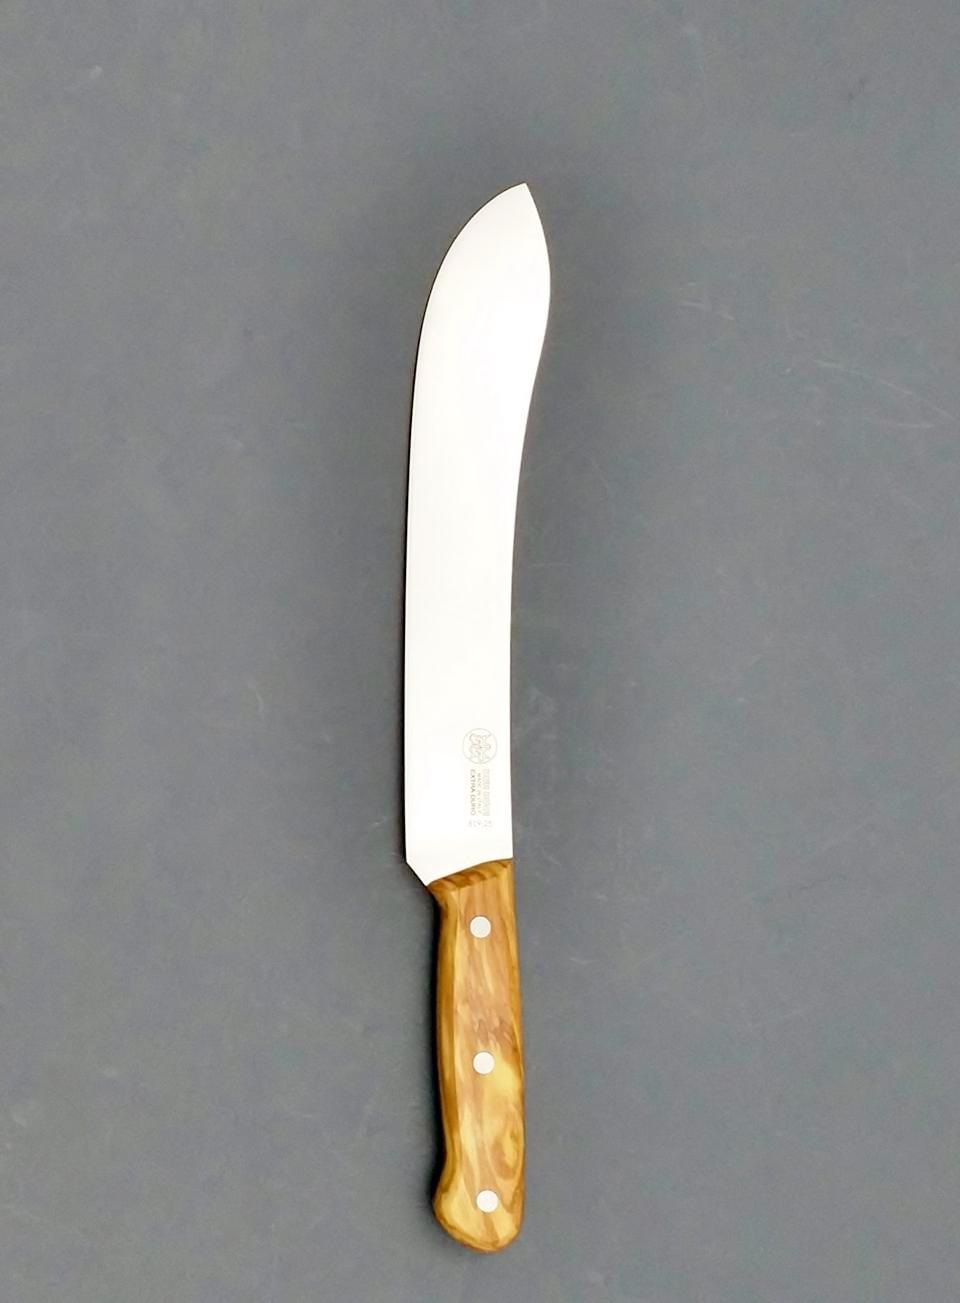 SABER KNIFE 10" BLADE - SOLID OLIVE WOOD FULL TANG HANDLE